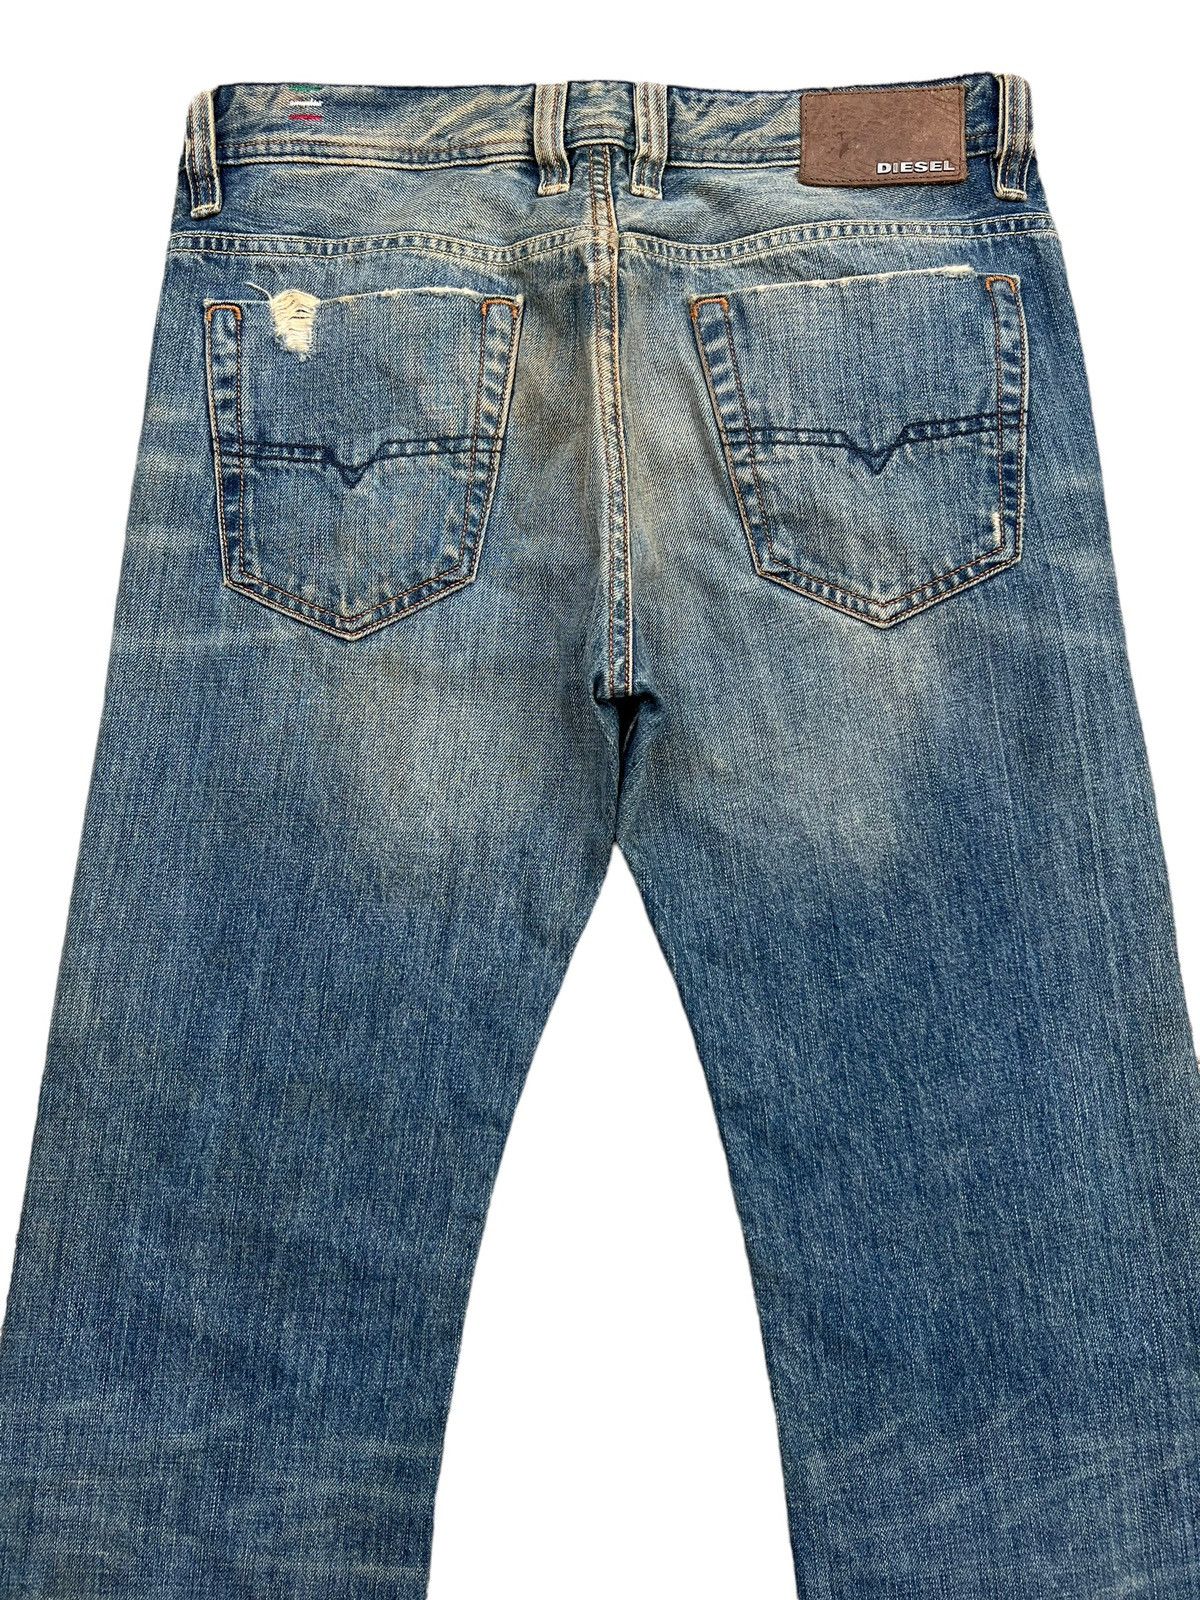 Diesel Mudwash Distressed Straightcut Denim Jeans 33x32 - 5